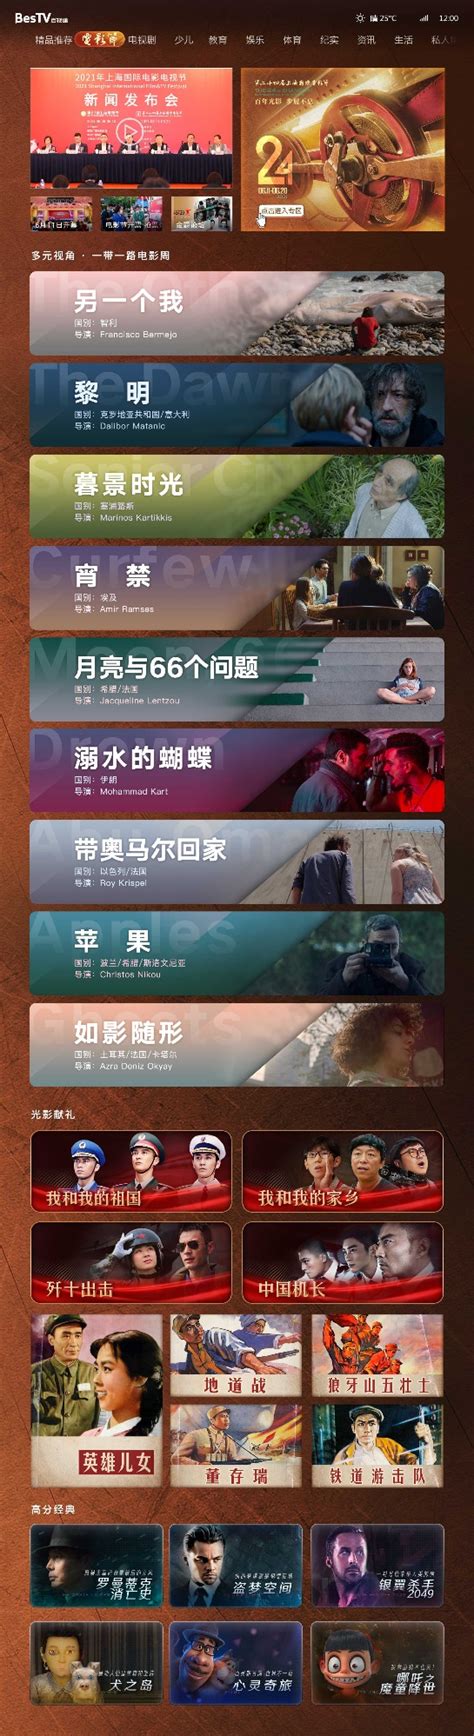 百视通线上影展专区启动，一秒直达上海国际电影节 - 众视网_视频运营商科技媒体